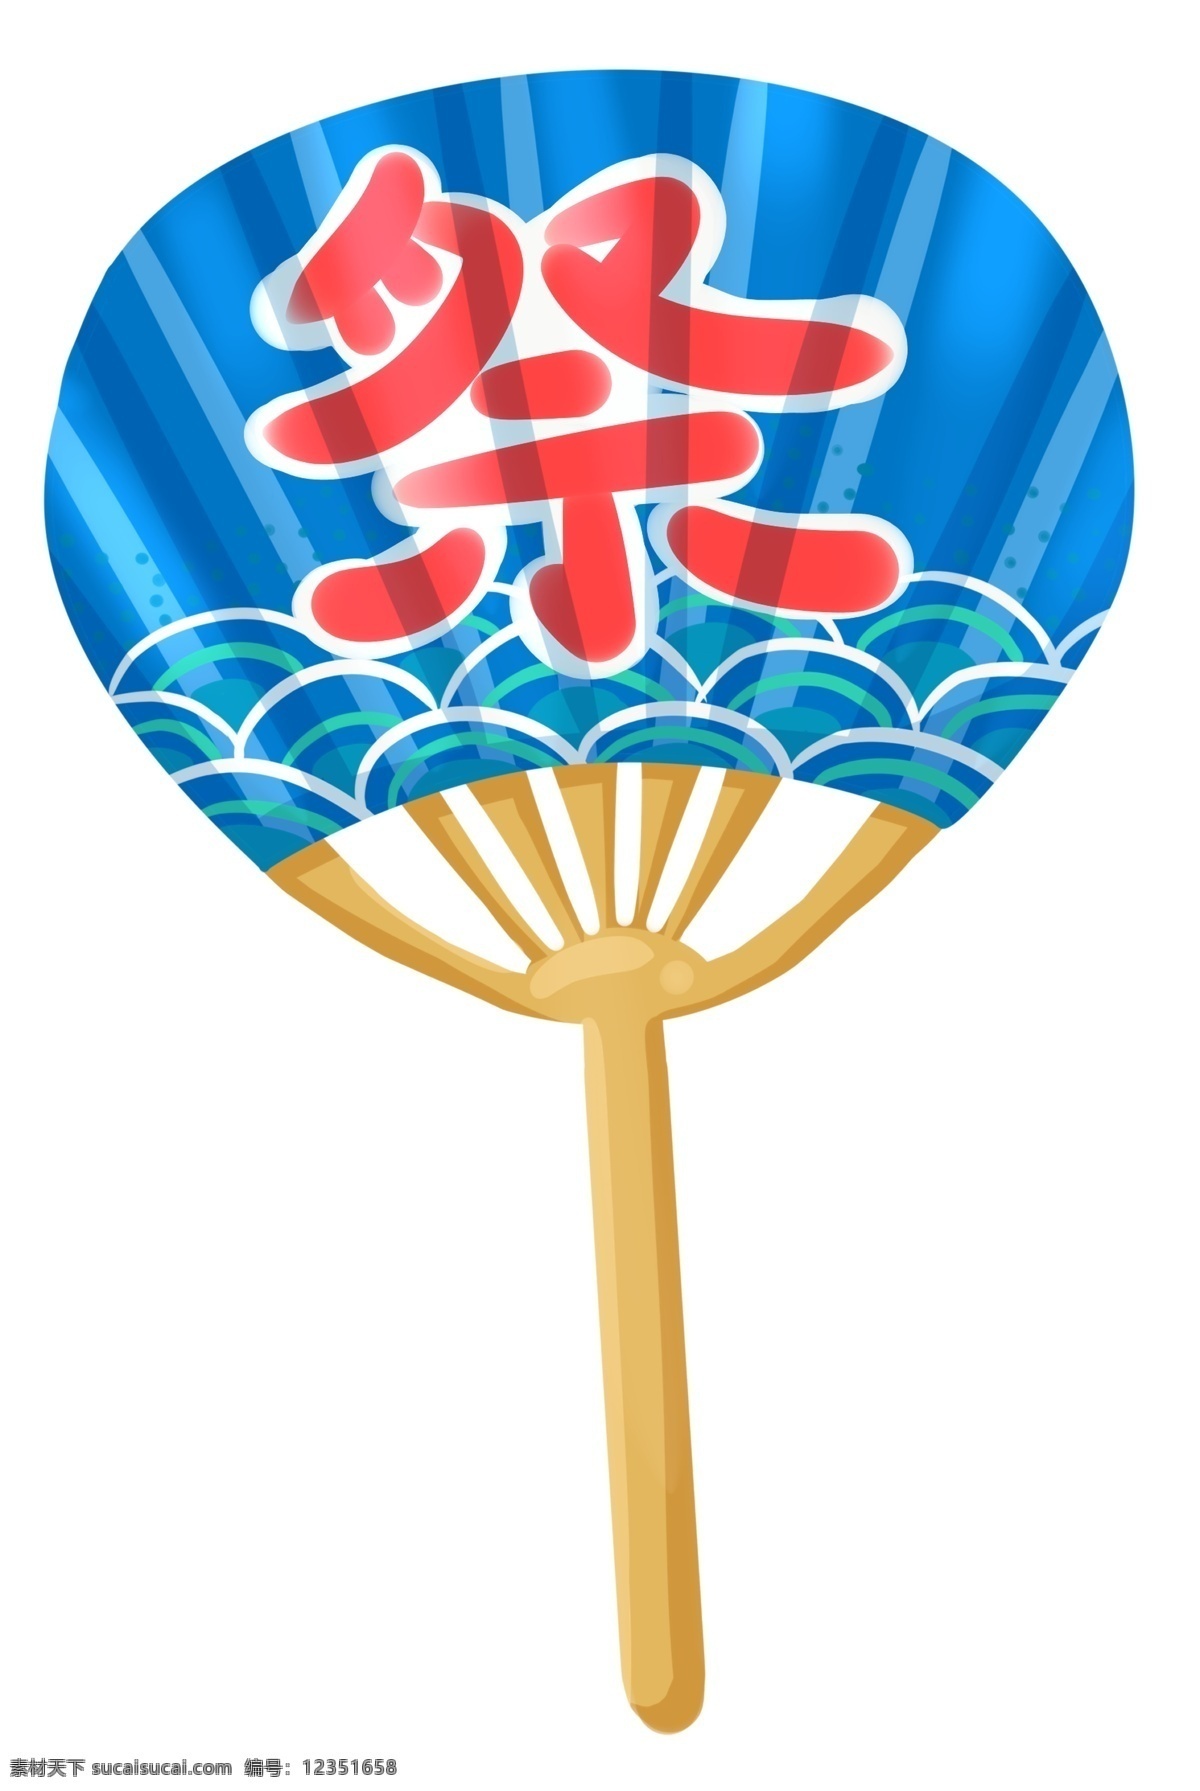 蓝色 日本 扇子 插画 蓝色的扇子 卡通插画 日本插画 日本产物 日本风情 日本物品 日本的扇子